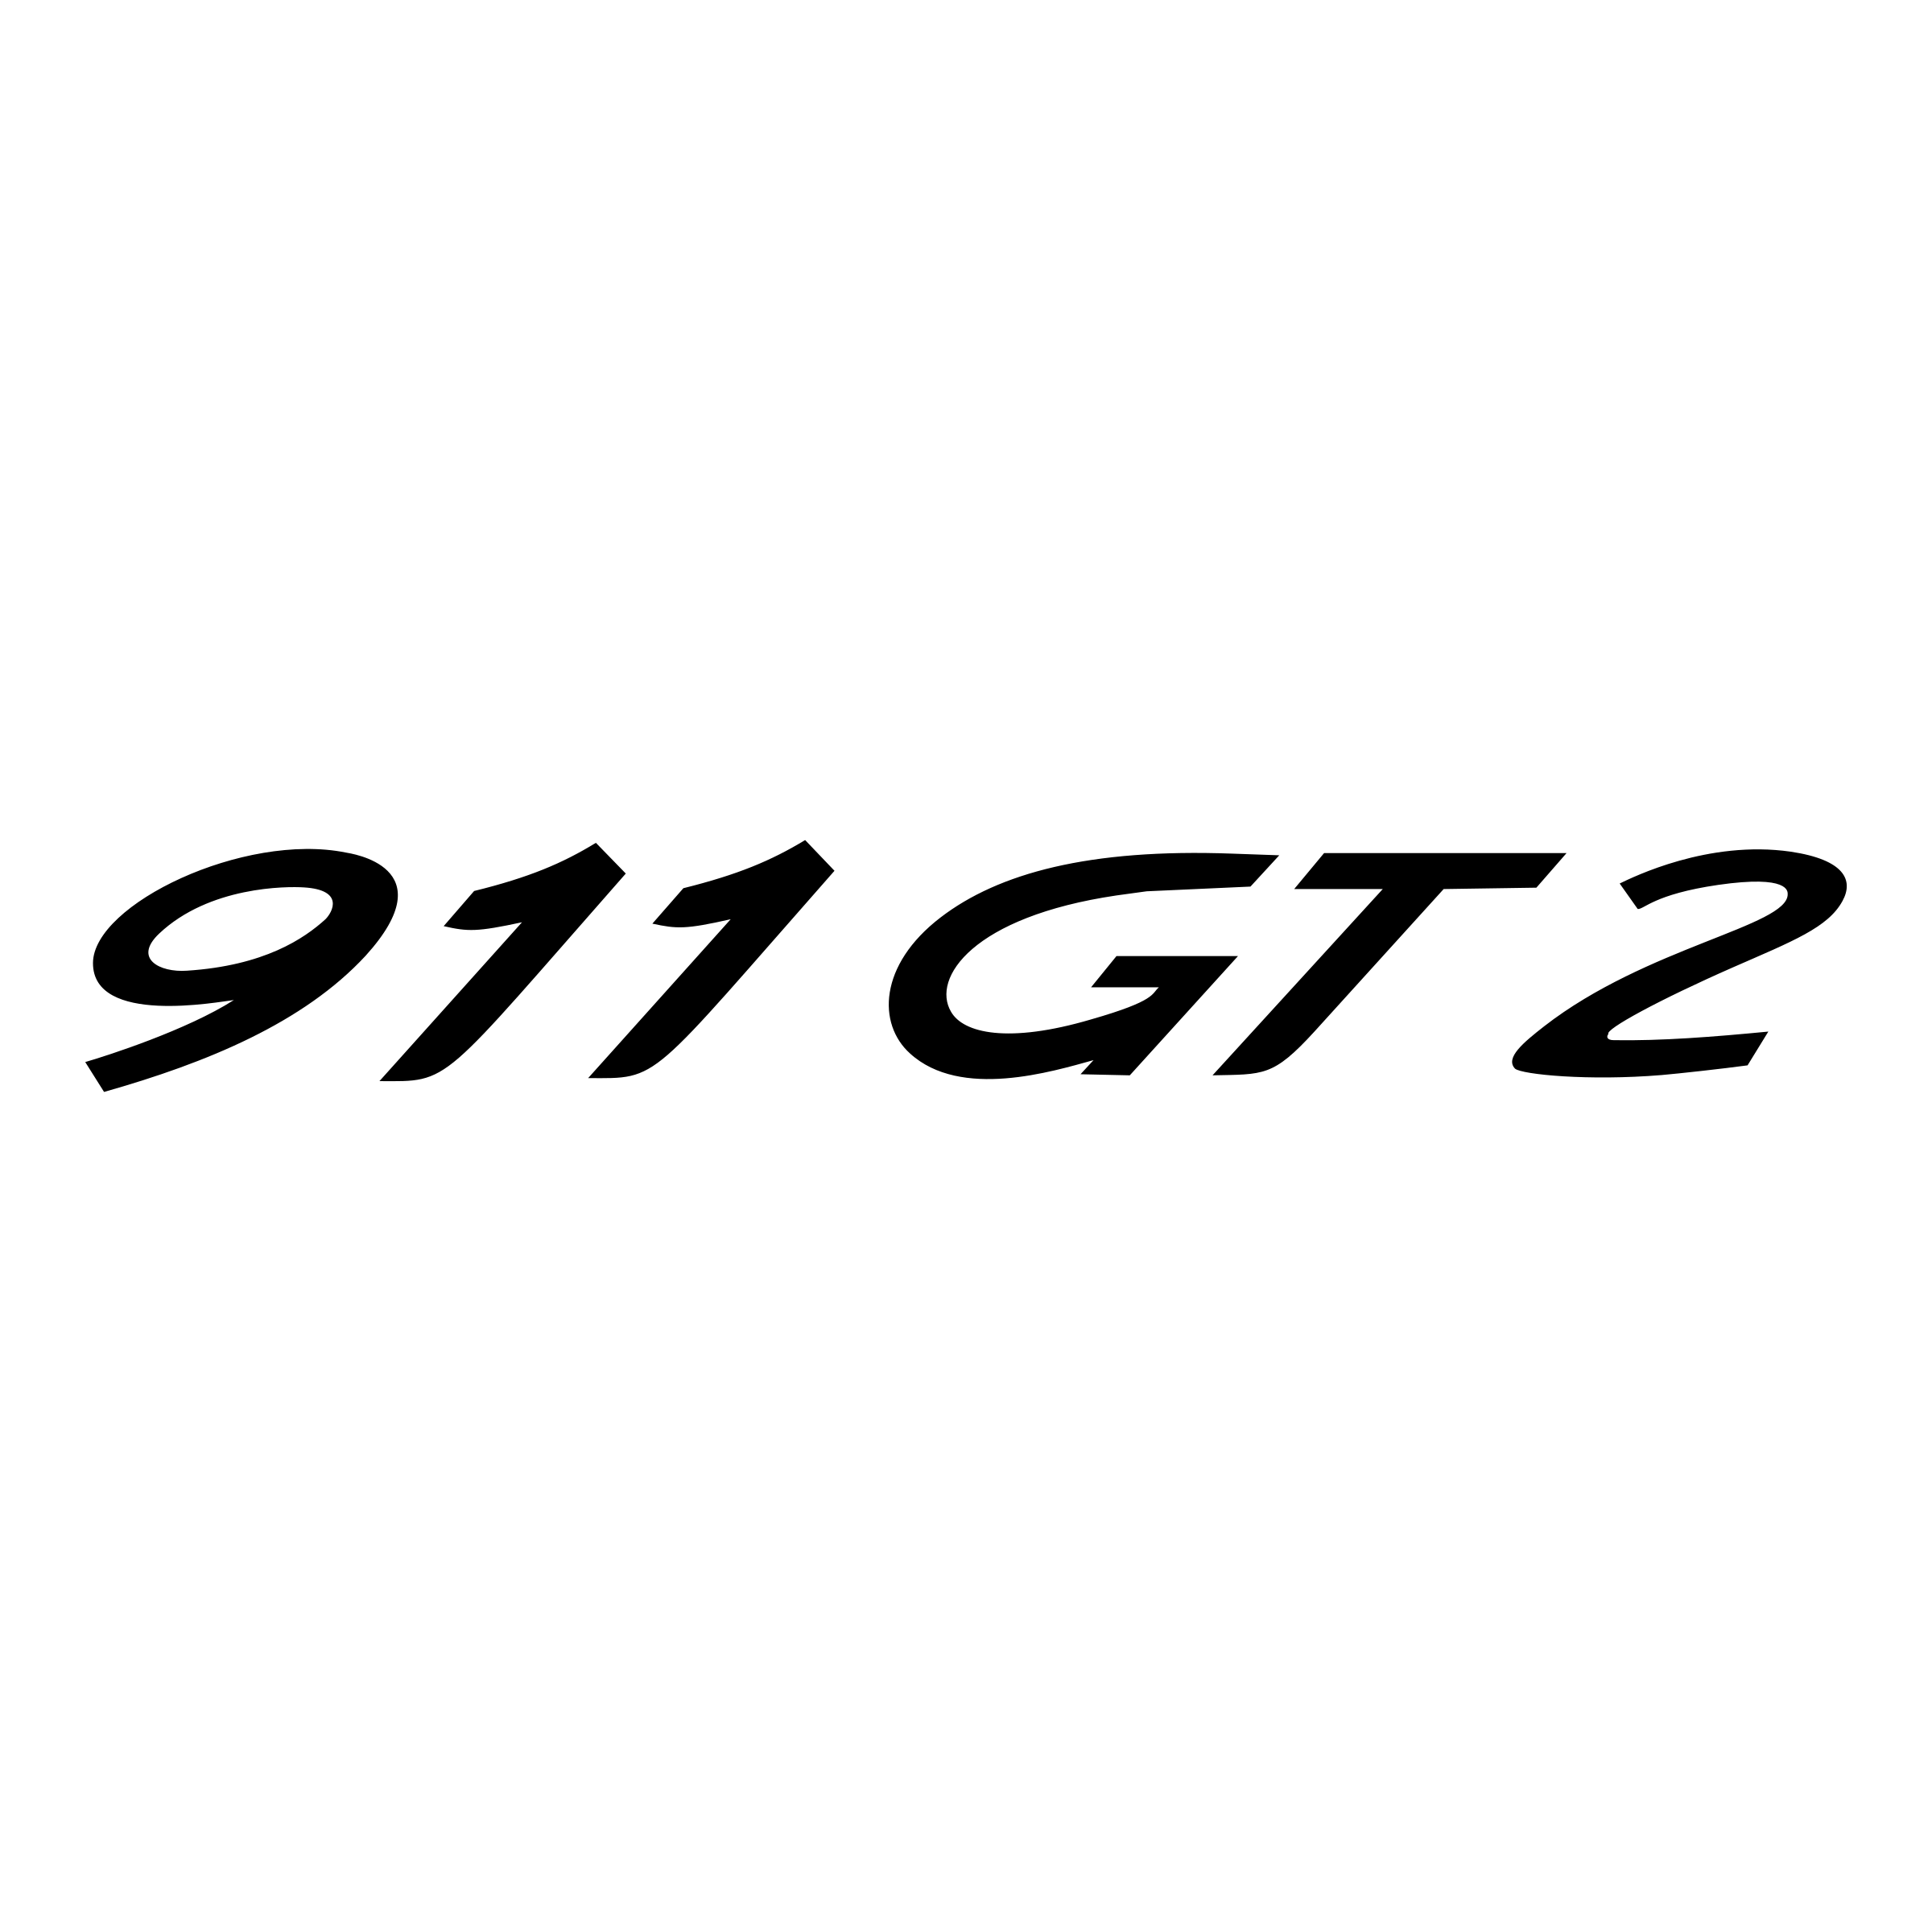 911 Logo - 911 GT2 Logo PNG Transparent & SVG Vector - Freebie Supply